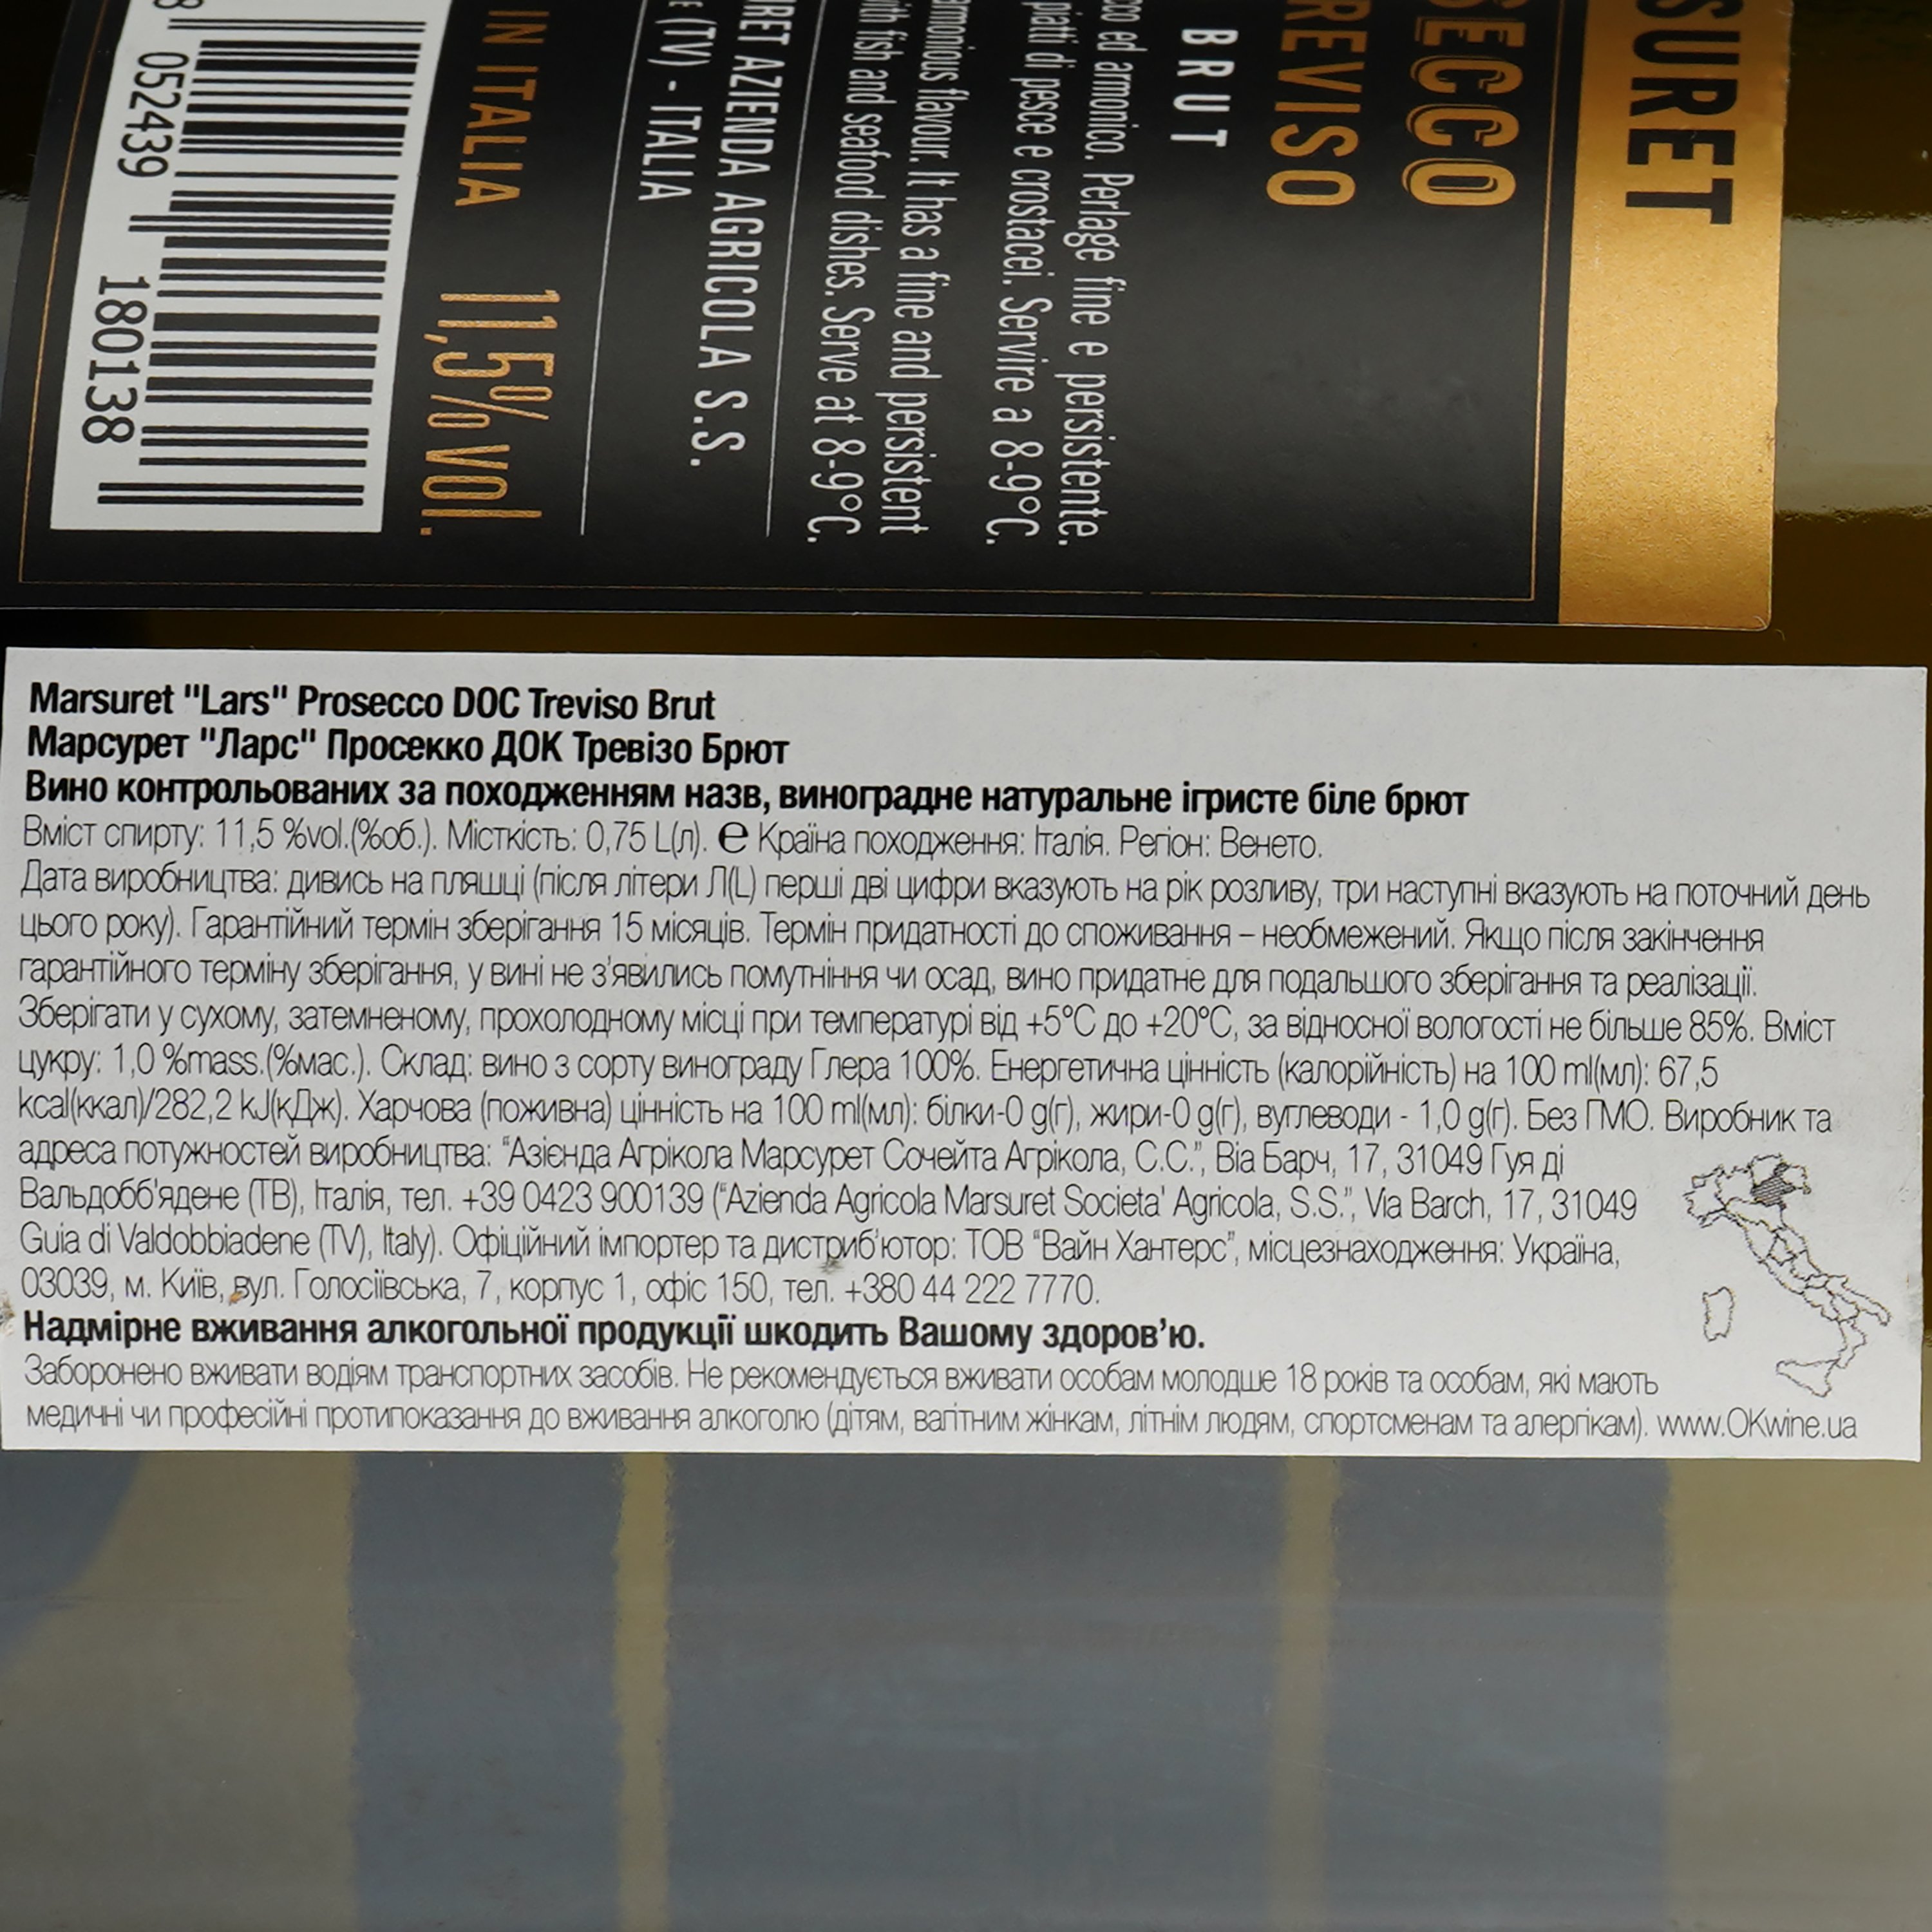 Игристое вино Marsuret Lars Prosecco DOC Treviso Brut, белое, брют, 0,75 л - фото 2